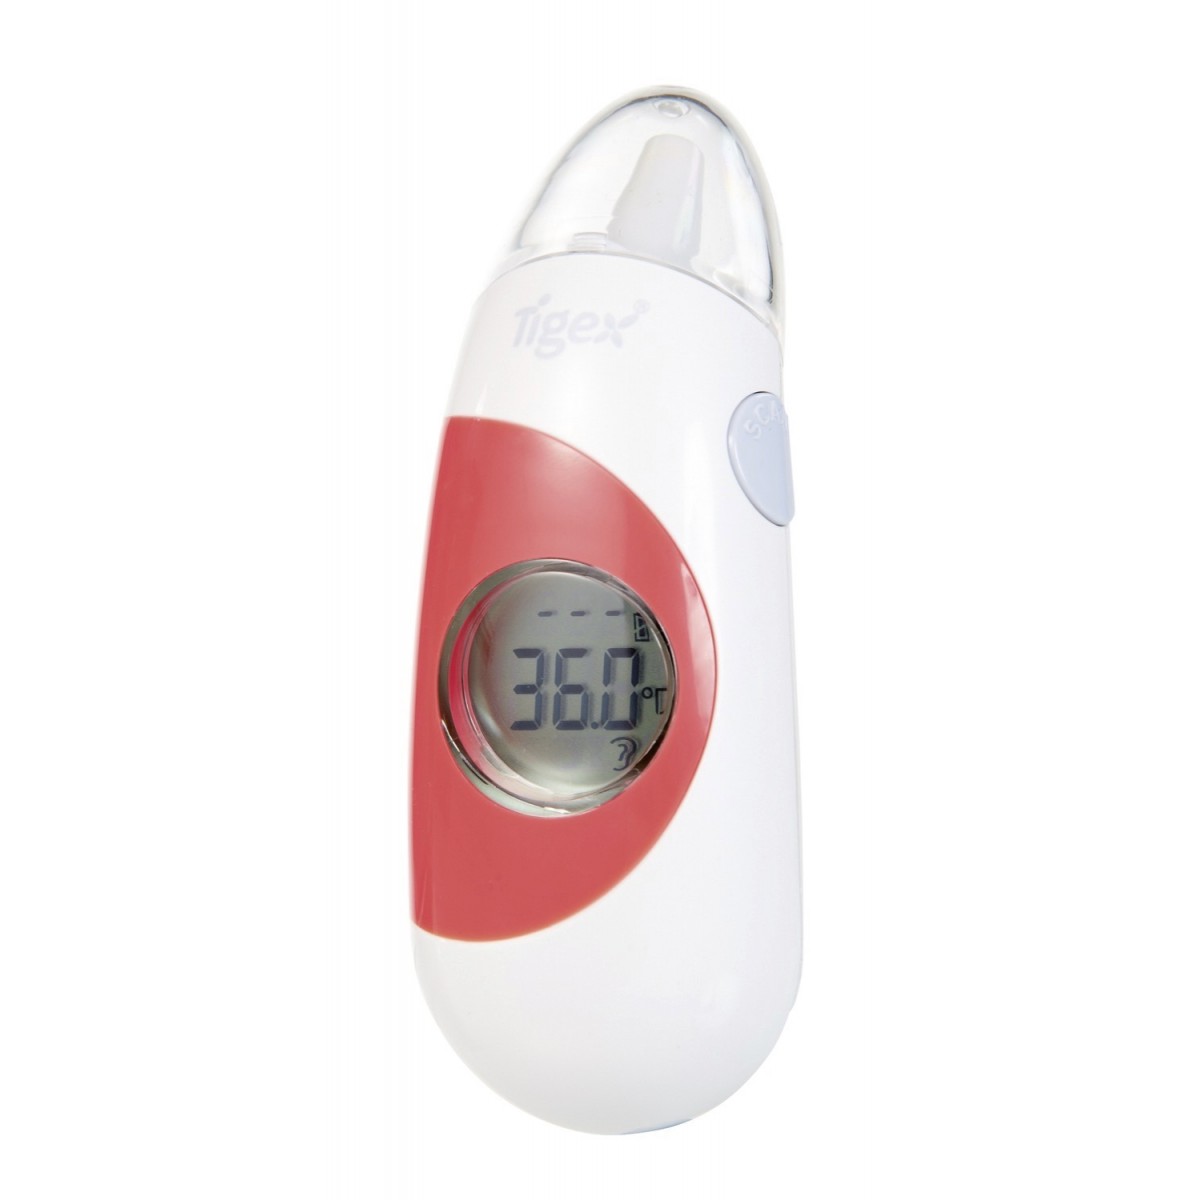 Tigex - Thermomètre bébé multifonctions au meilleur prix